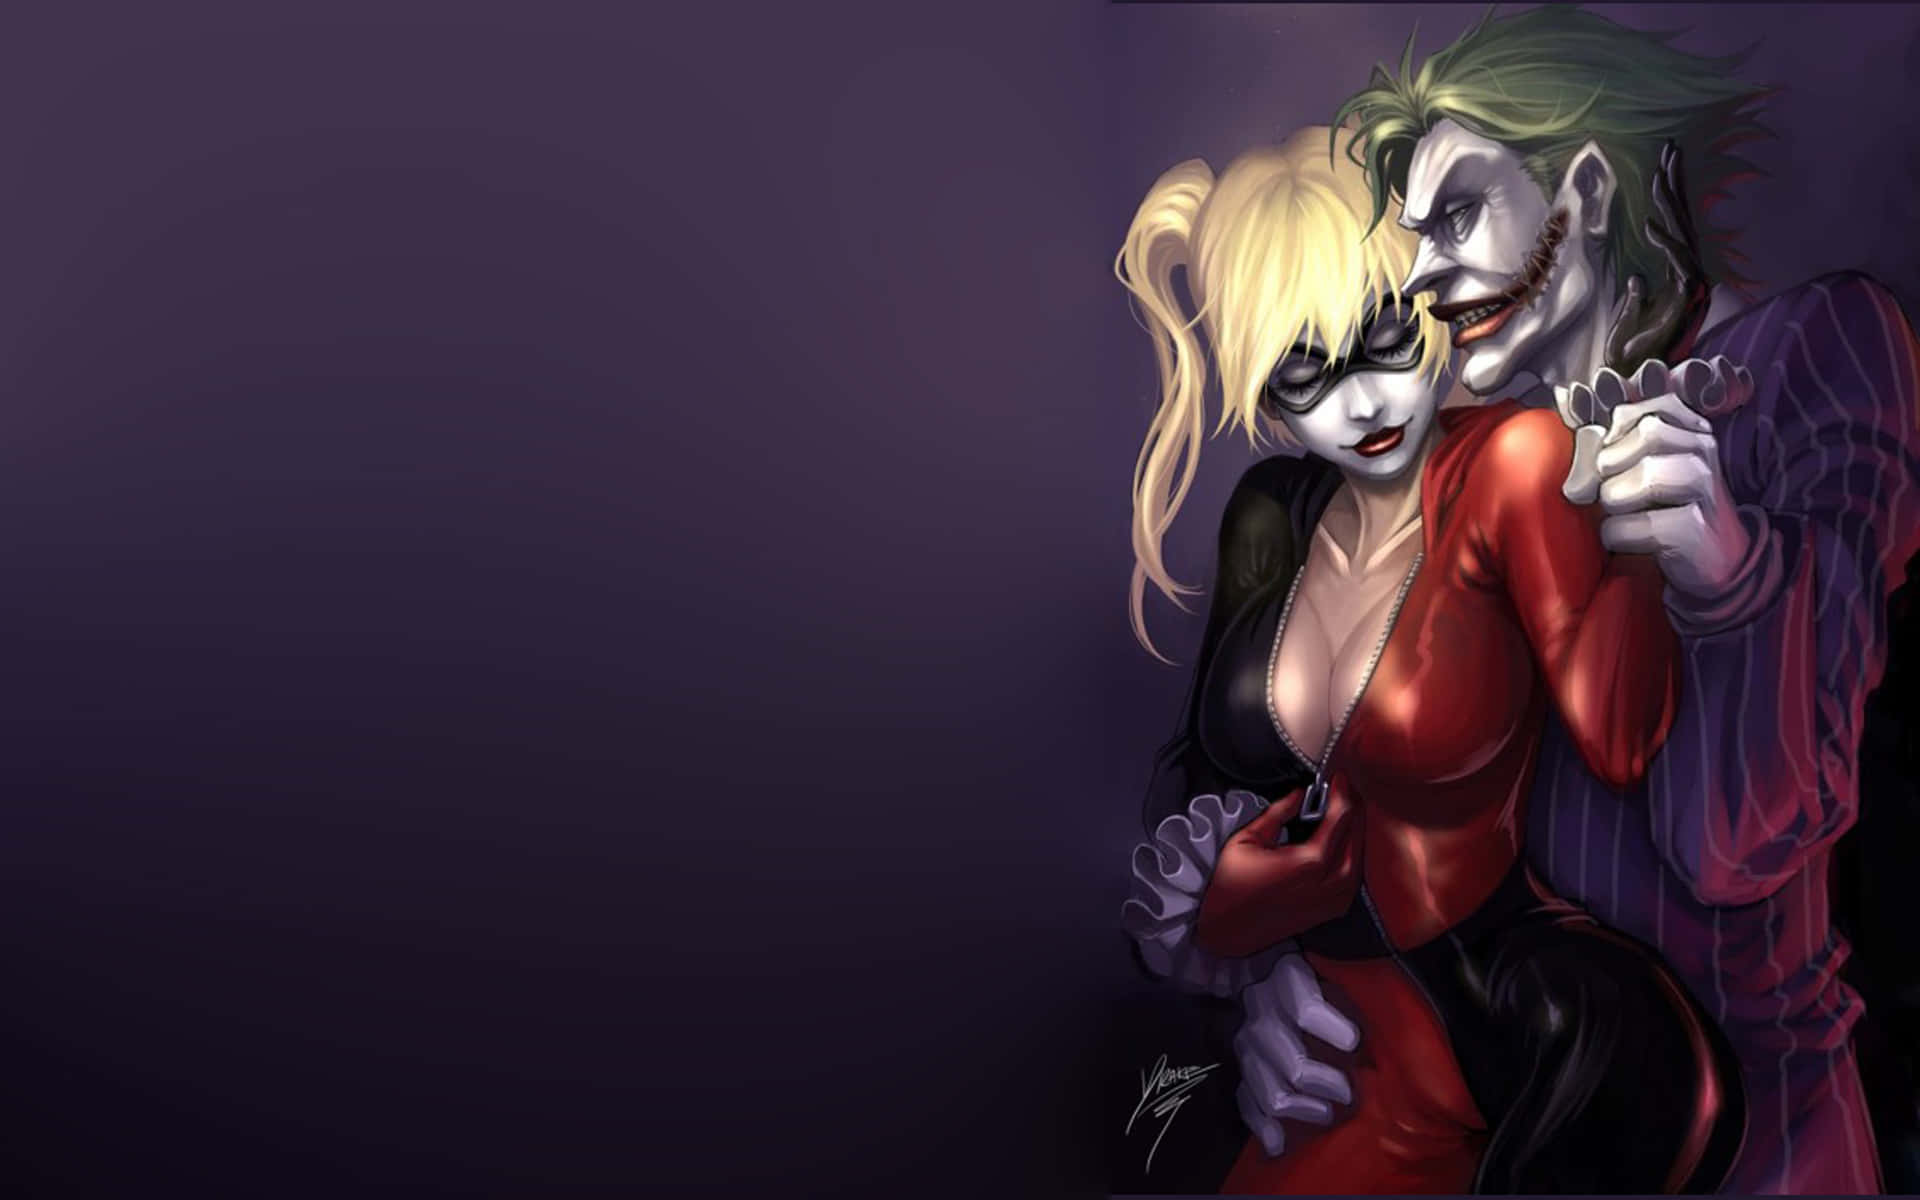 Dieliebesbindung Zwischen Dem Joker Und Harley Quinn In Suicide Squad Wallpaper